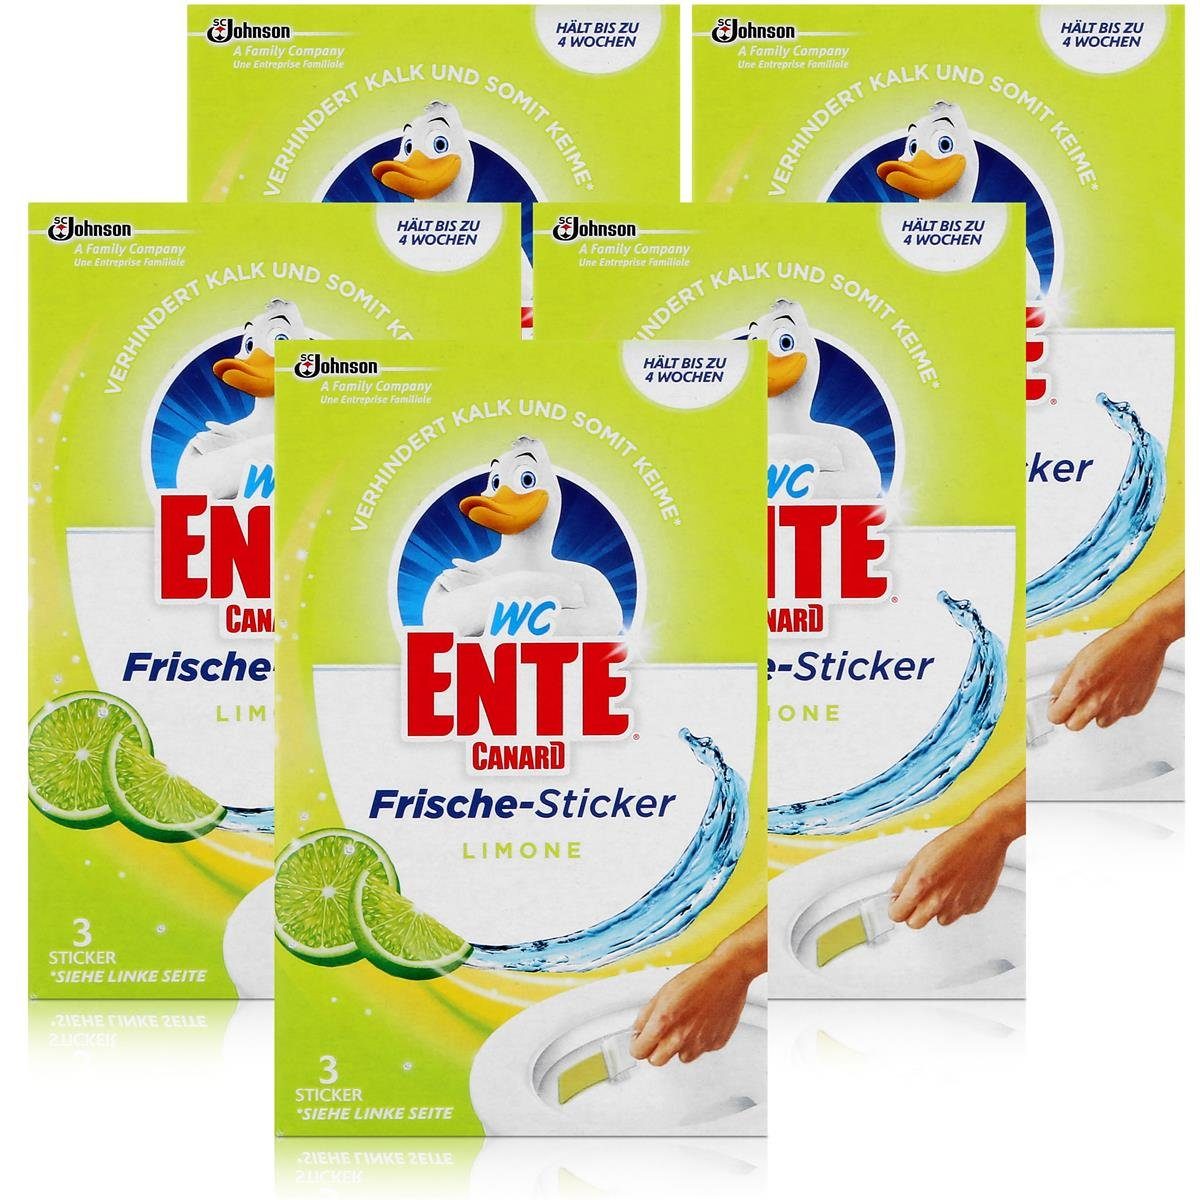 WC Ente WC (5er Pack) Frische-Sticker 3x9g Limone Ente WC-Reiniger WC-Frische